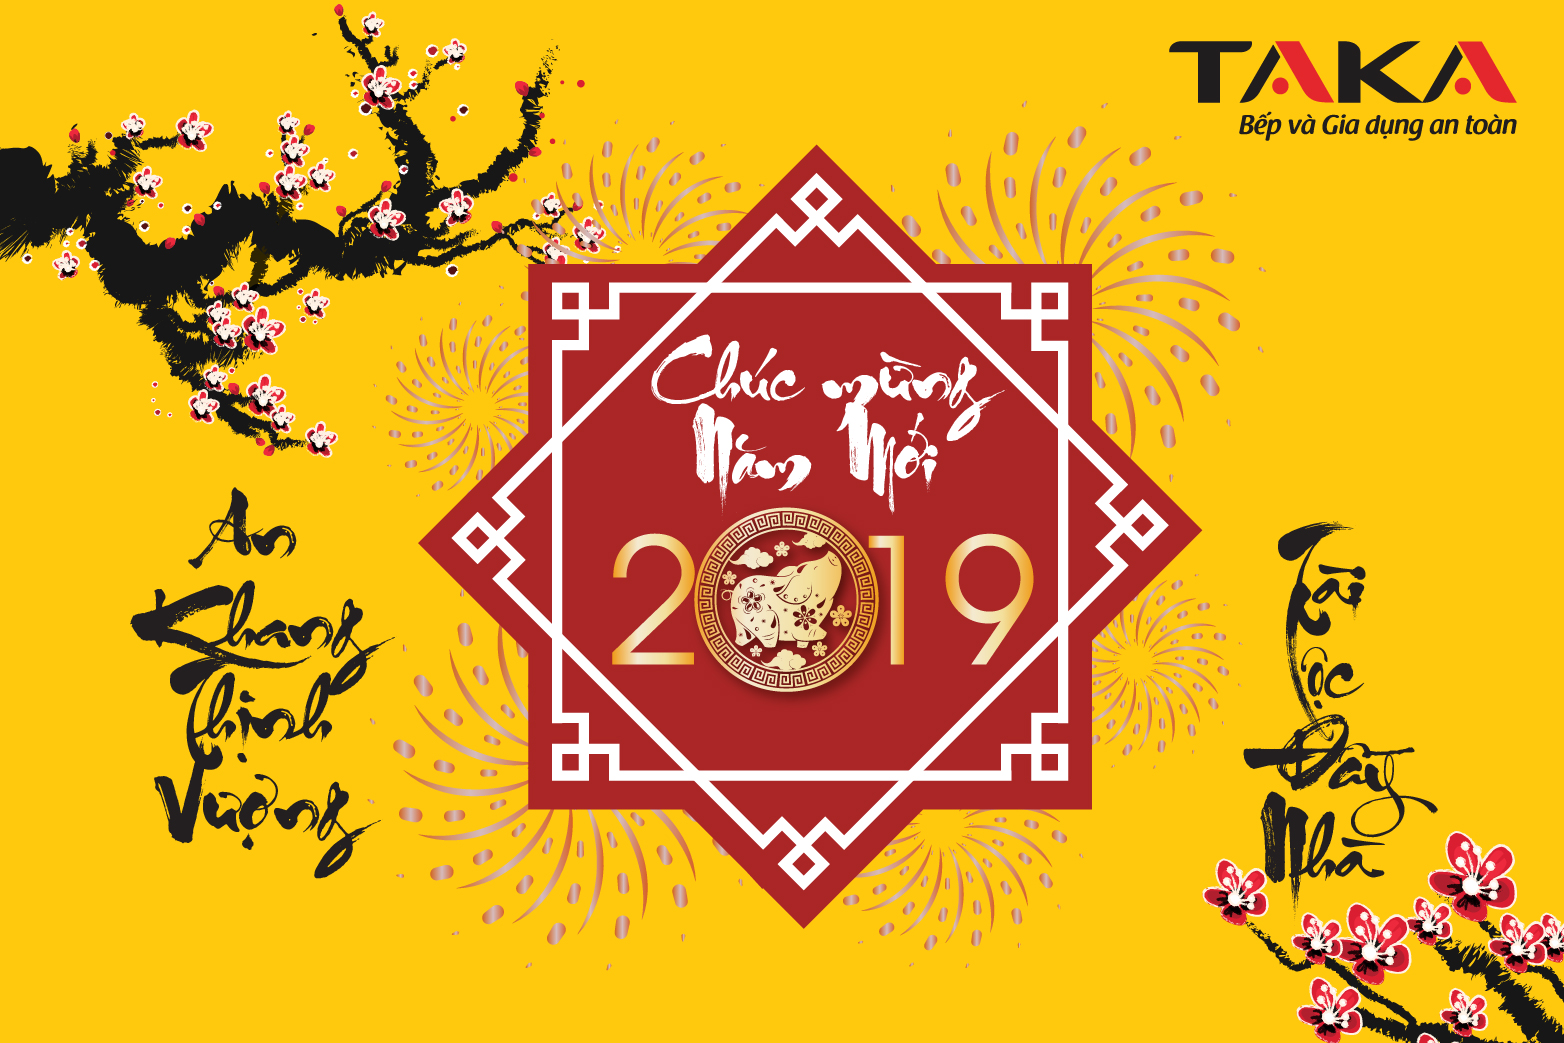 Tiệc tất niên Công ty TNHH Taka Việt Nam 2018